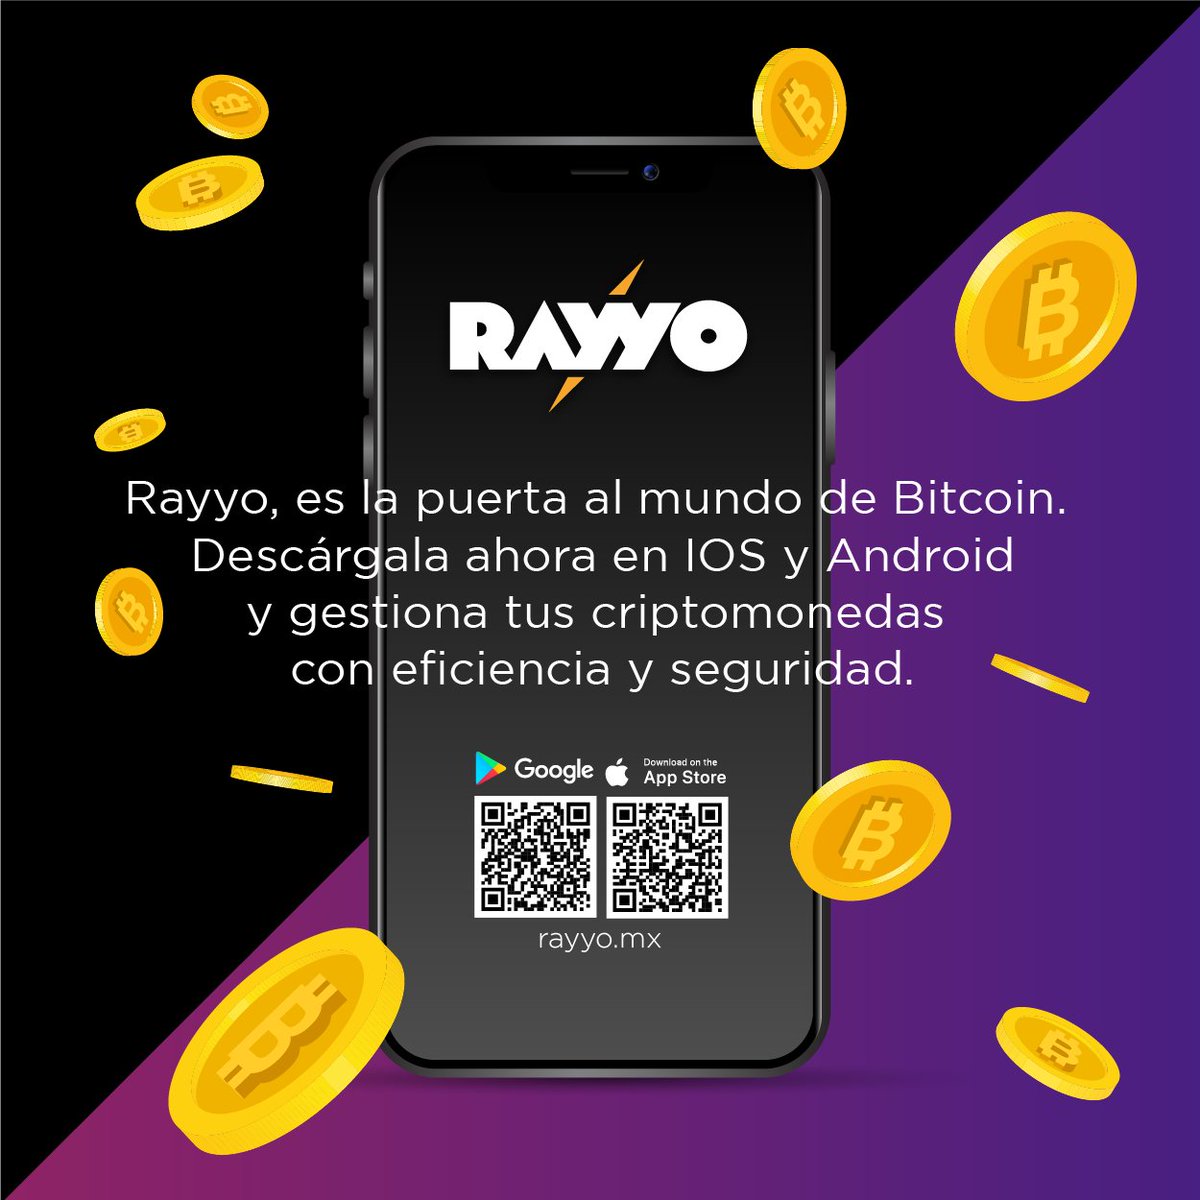 🚀 #RAYYO #Wallet es tu puerta al mundo de Bitcoin. Descárgala ahora en #IOS o #Android y gestiona tus criptomonedas con eficiencia y seguridad. ¡Compra #Bitcoin fácilmente con RAYYO y mantén tus activos a salvo!
.
.
#bitcoinapp #rayyoapp #androidapp #iosapp #android #iOS #crypto